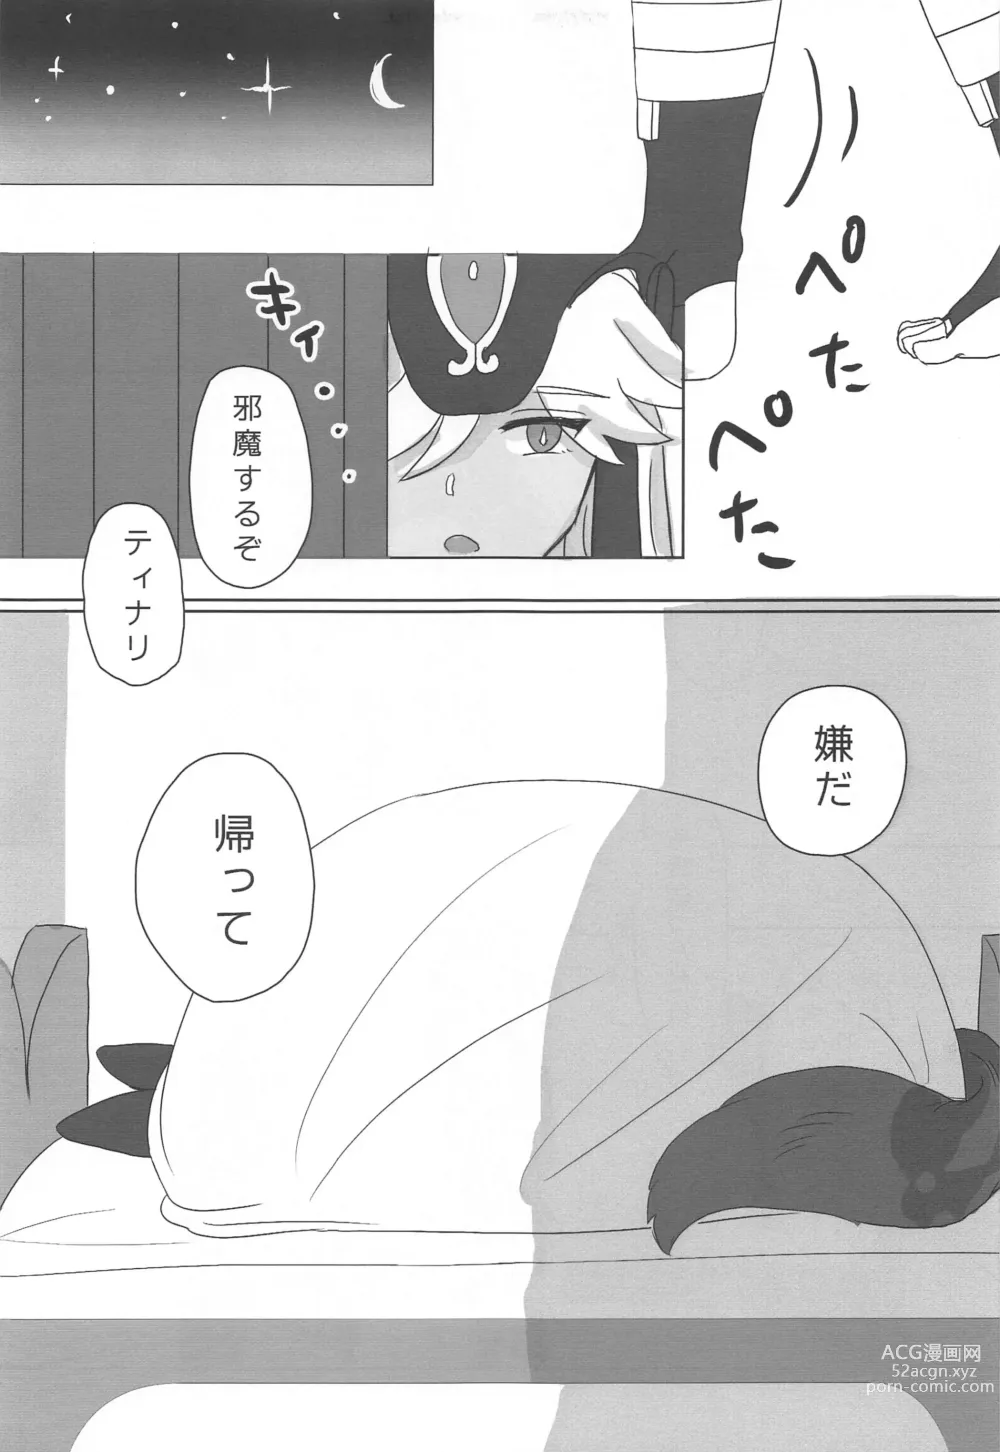 Page 6 of doujinshi Kimi ga Nozomu nara